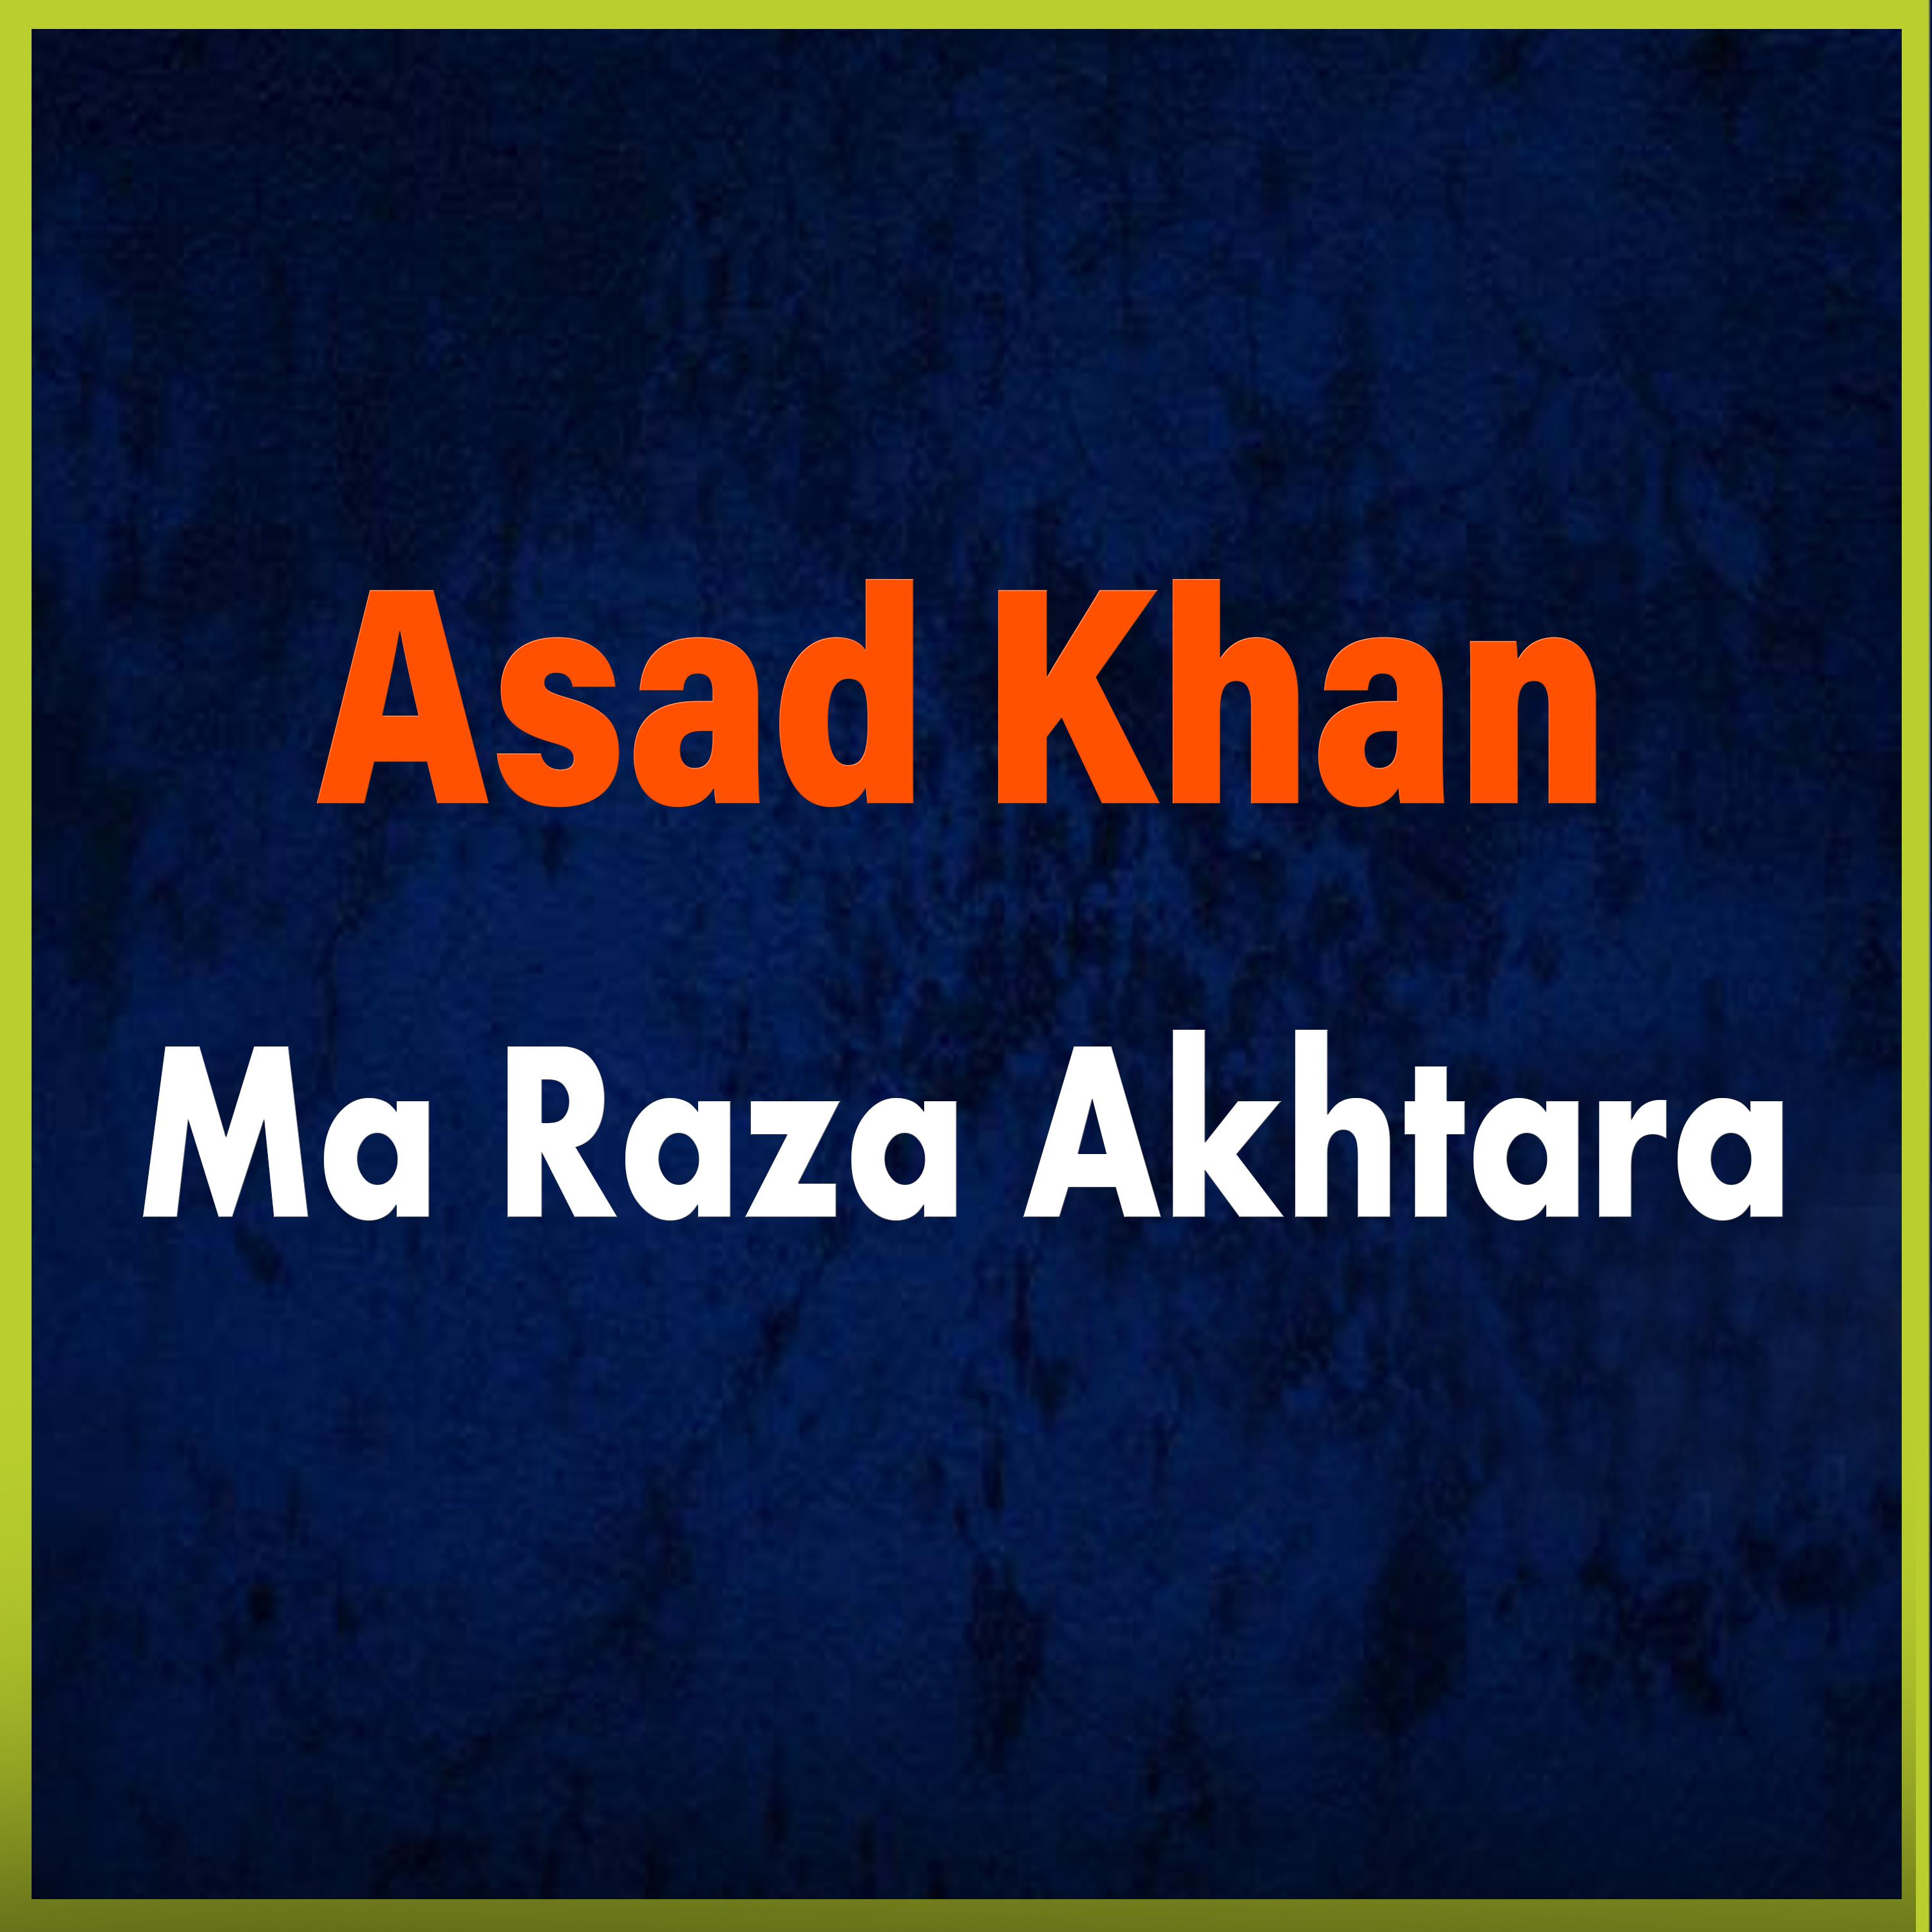 Asad Khan - Zama Khatir Bande